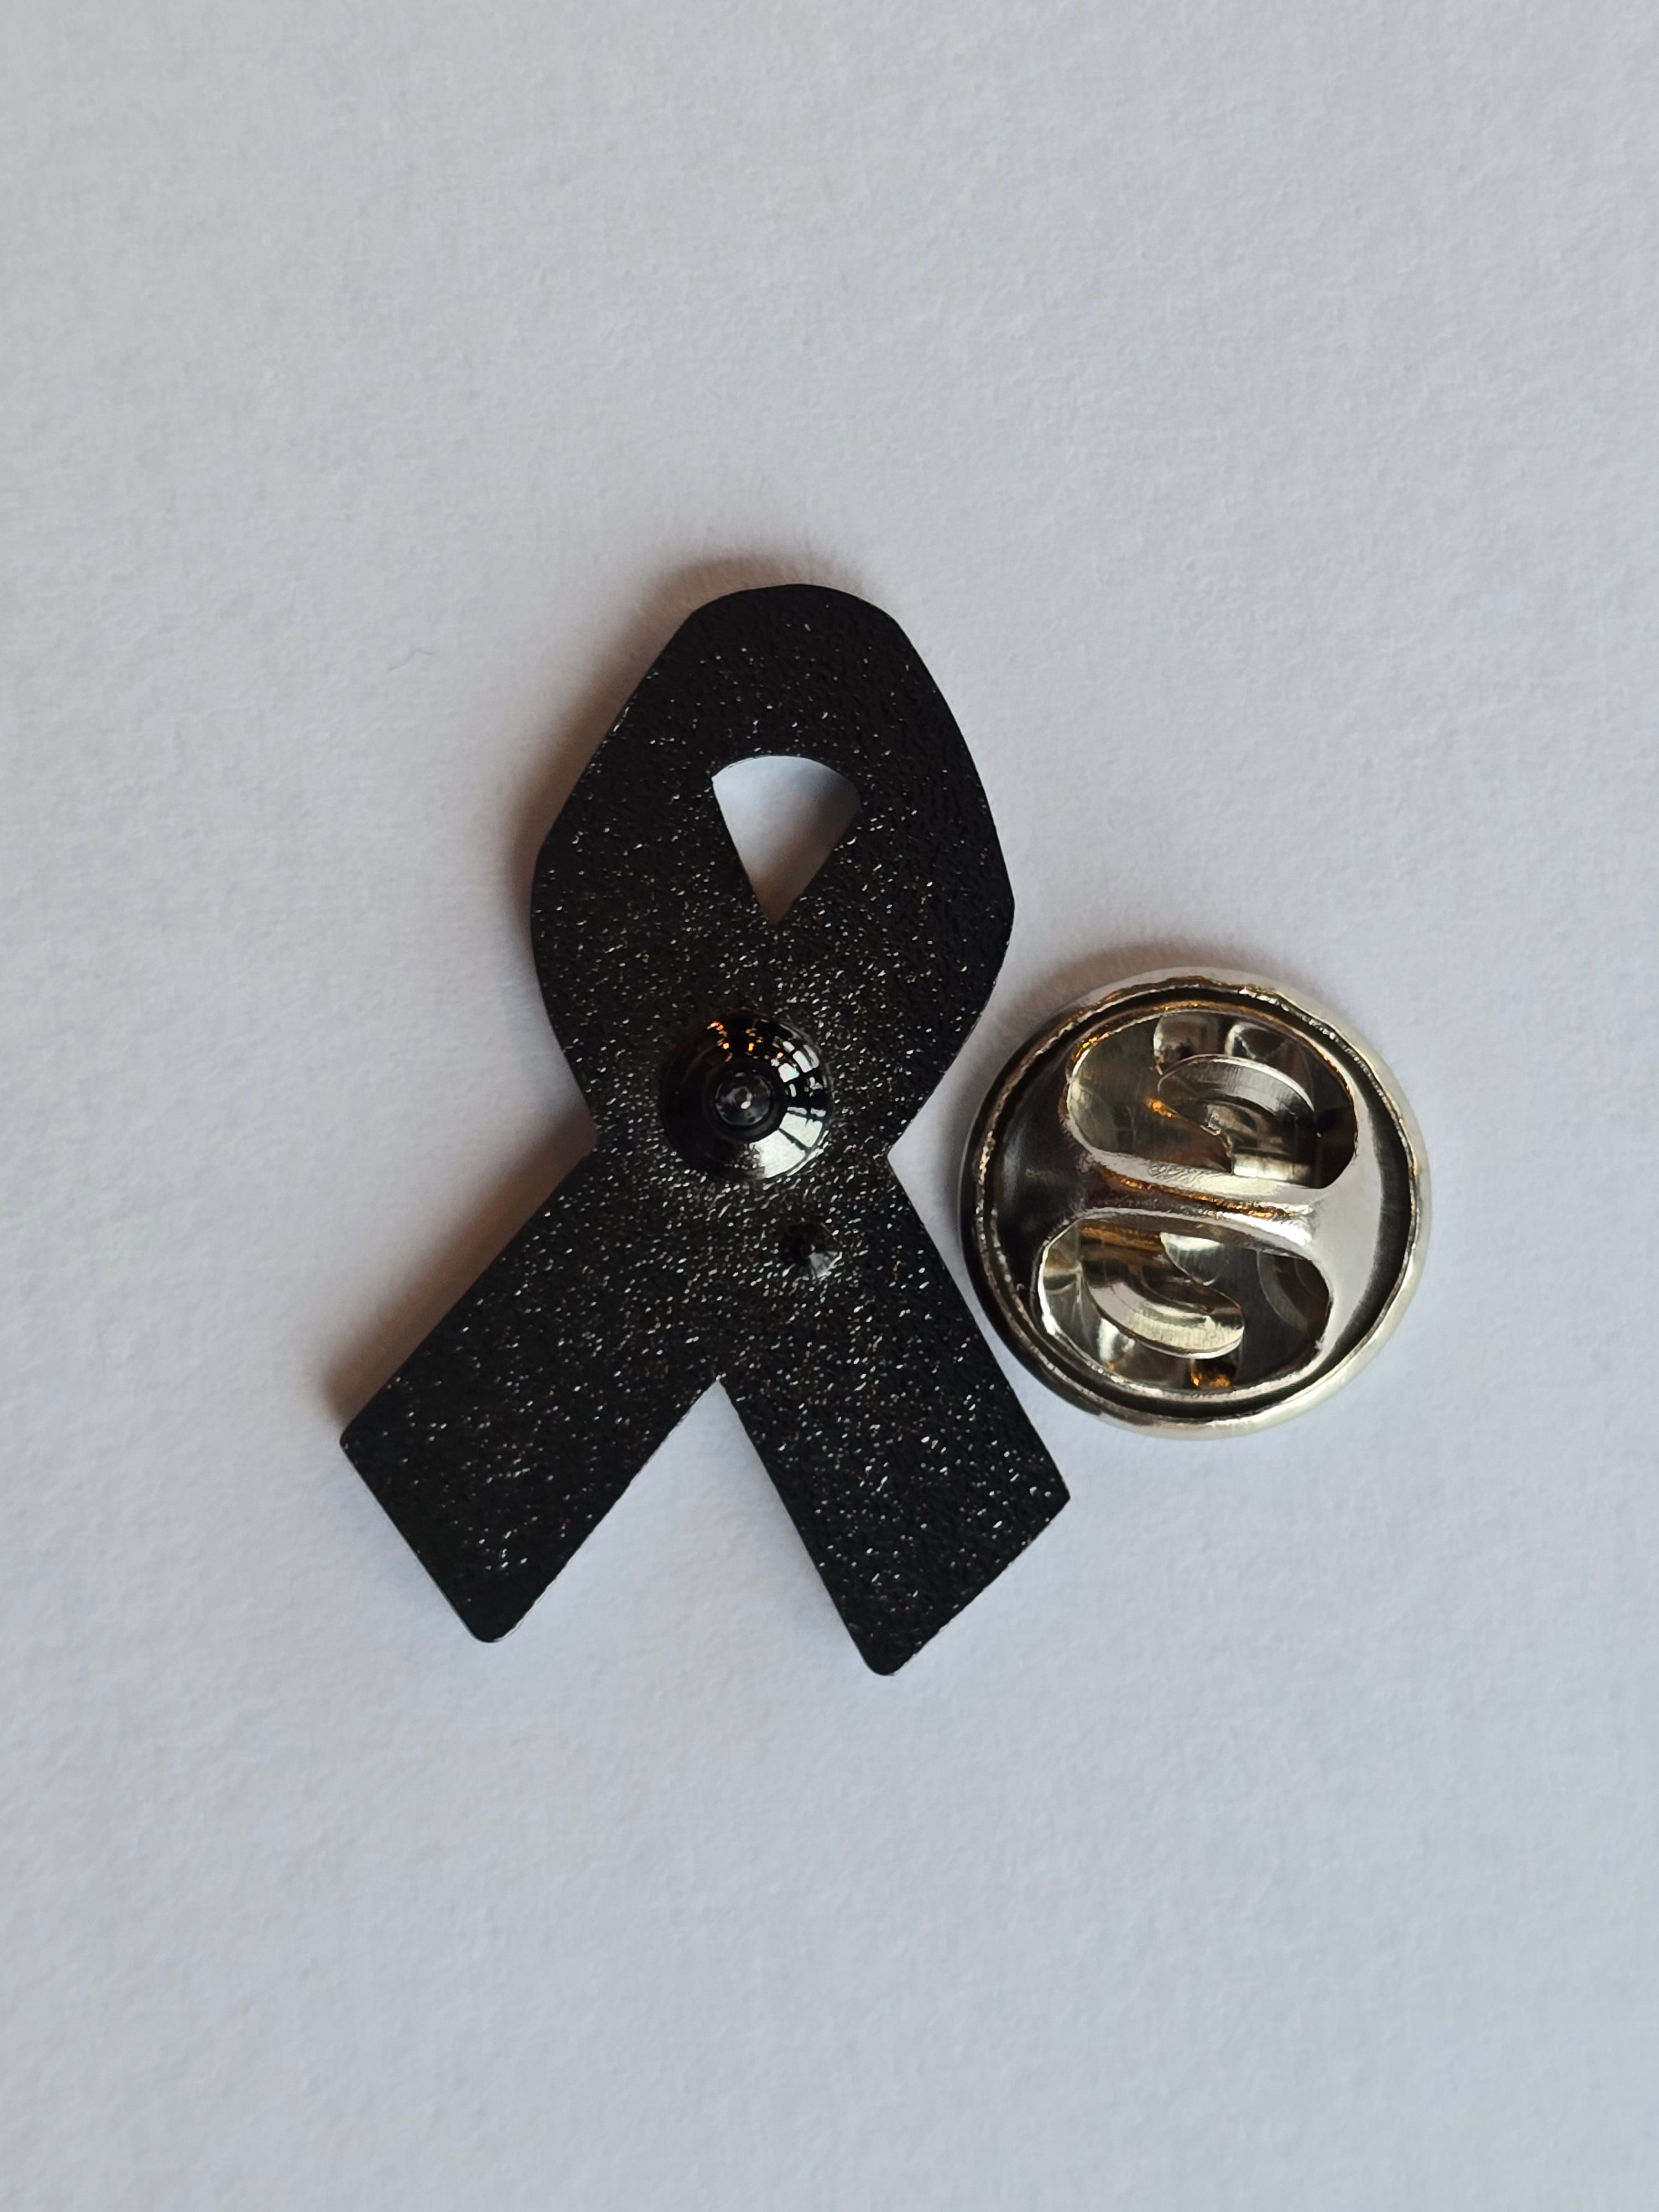 Palestinian Ribbon pin badge